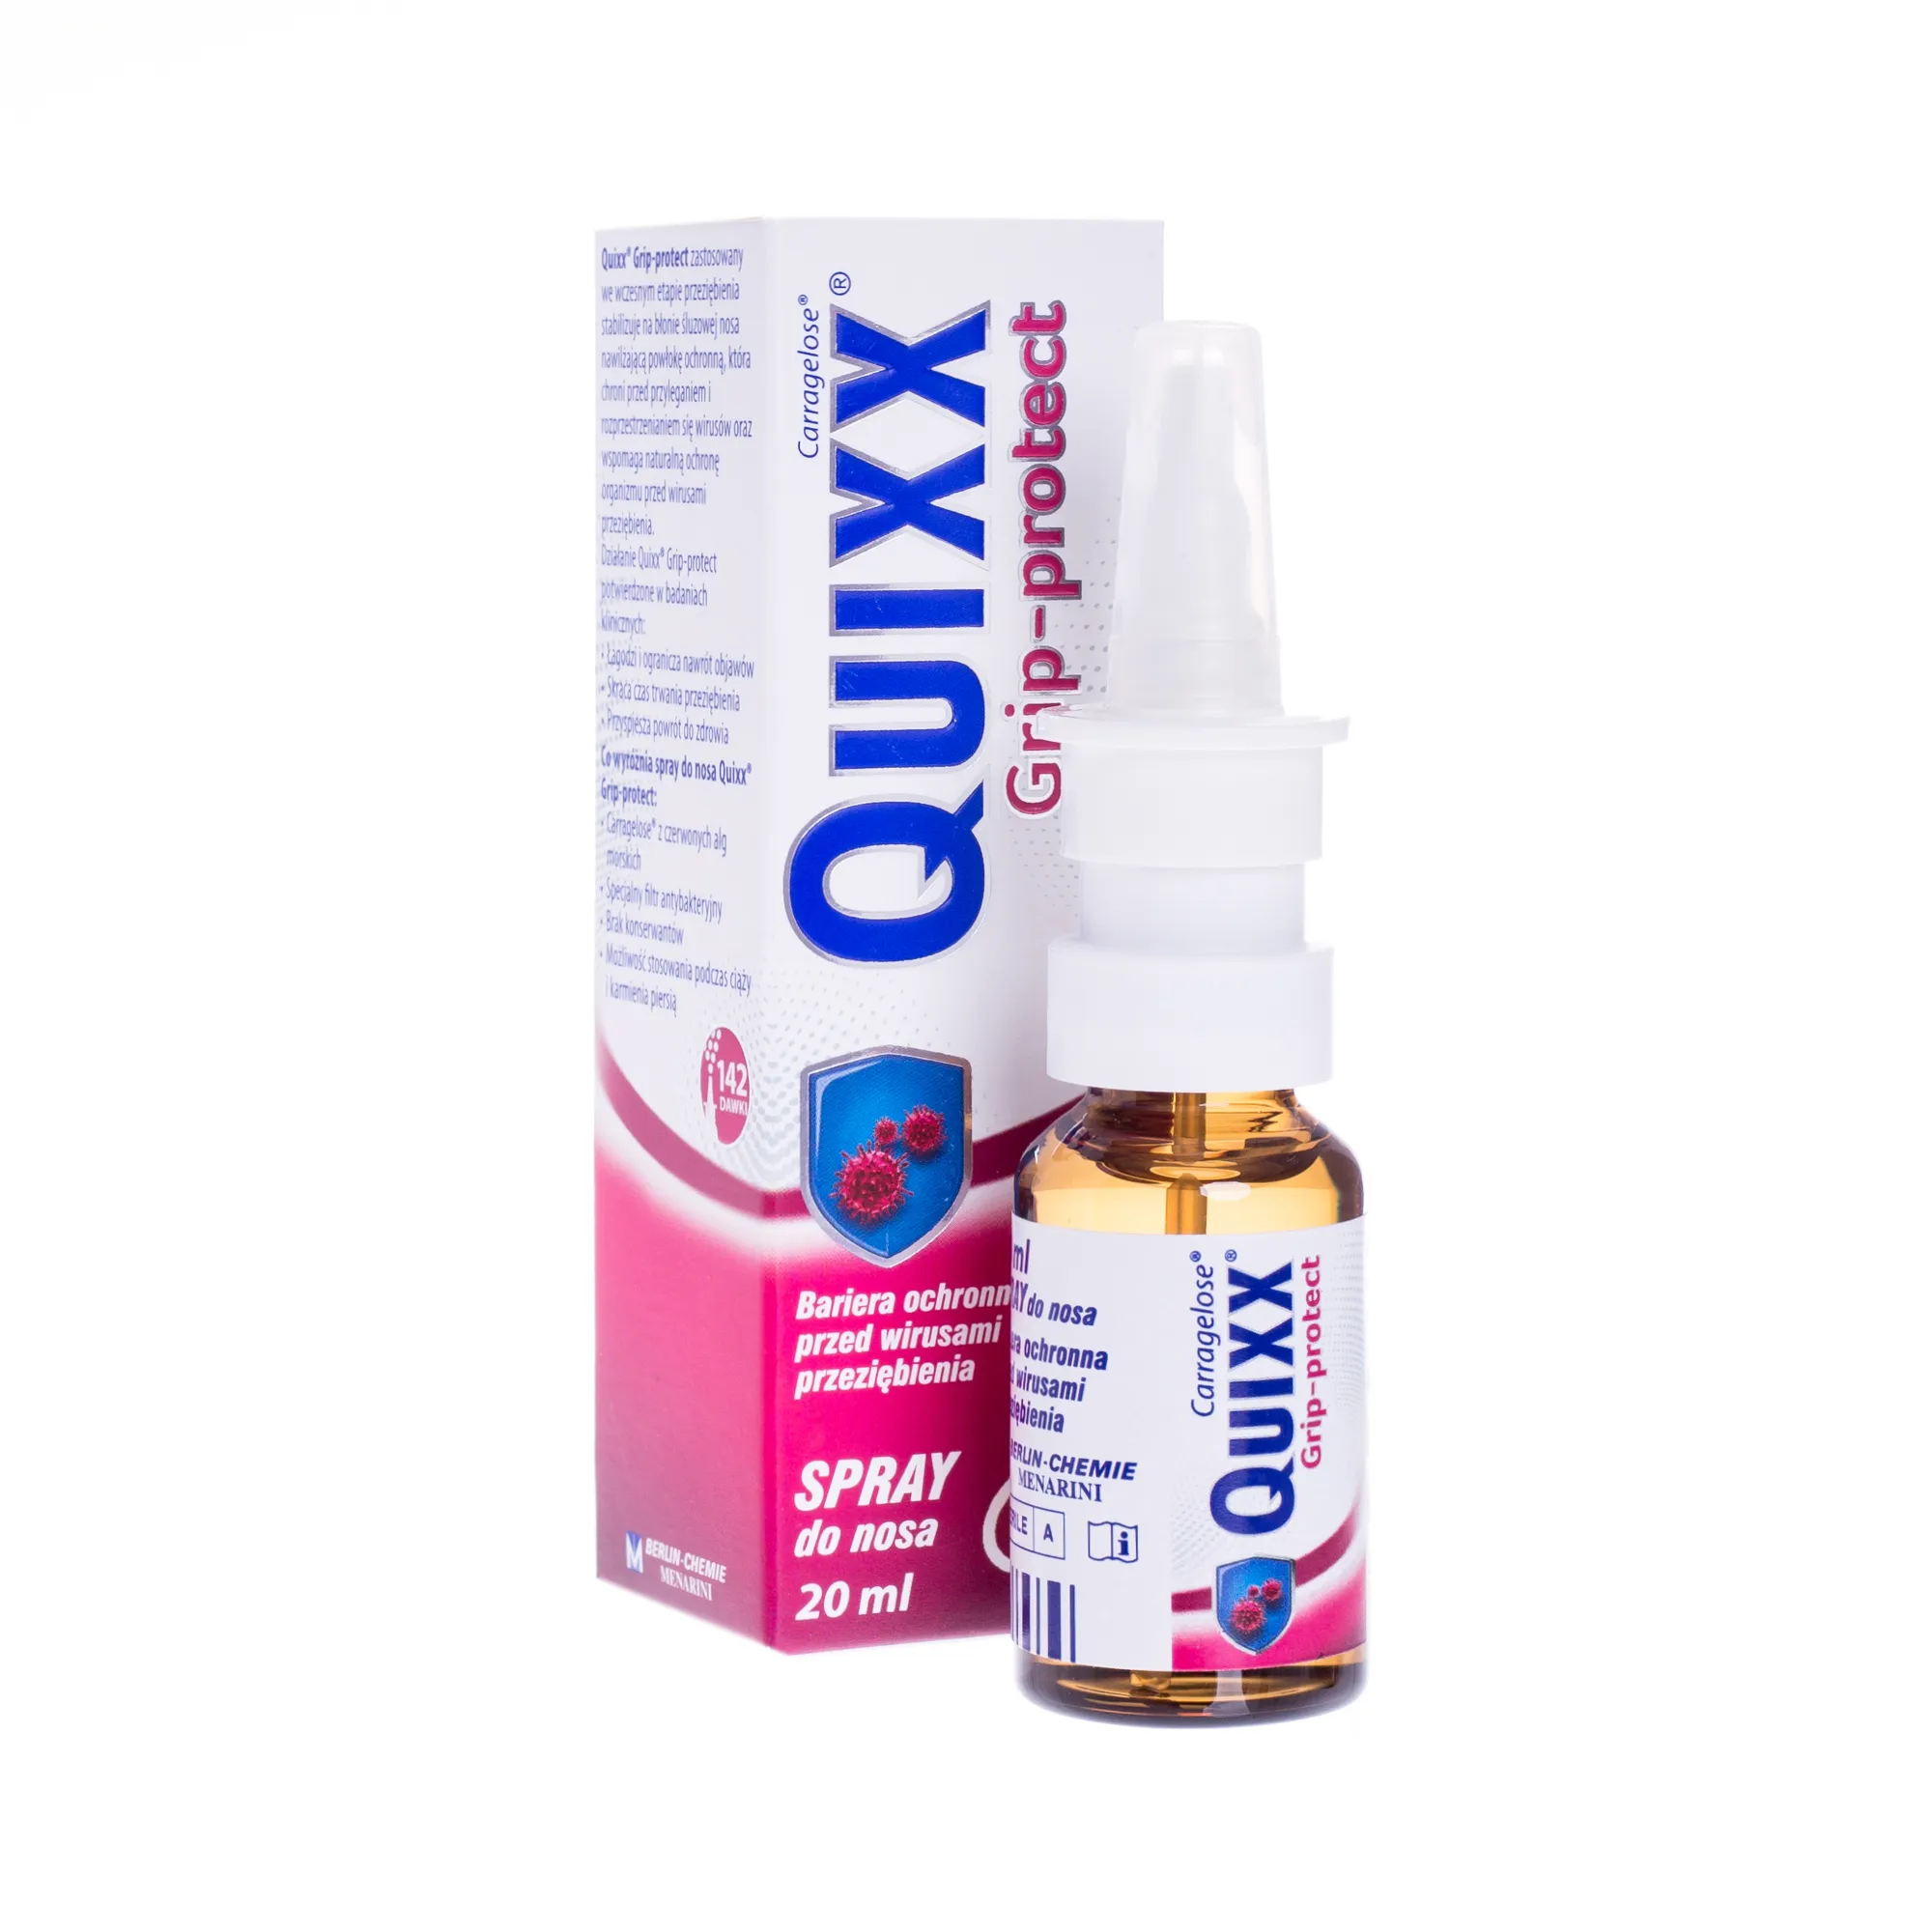 Quixx Grip-protect, spray do nosa, 20 ml